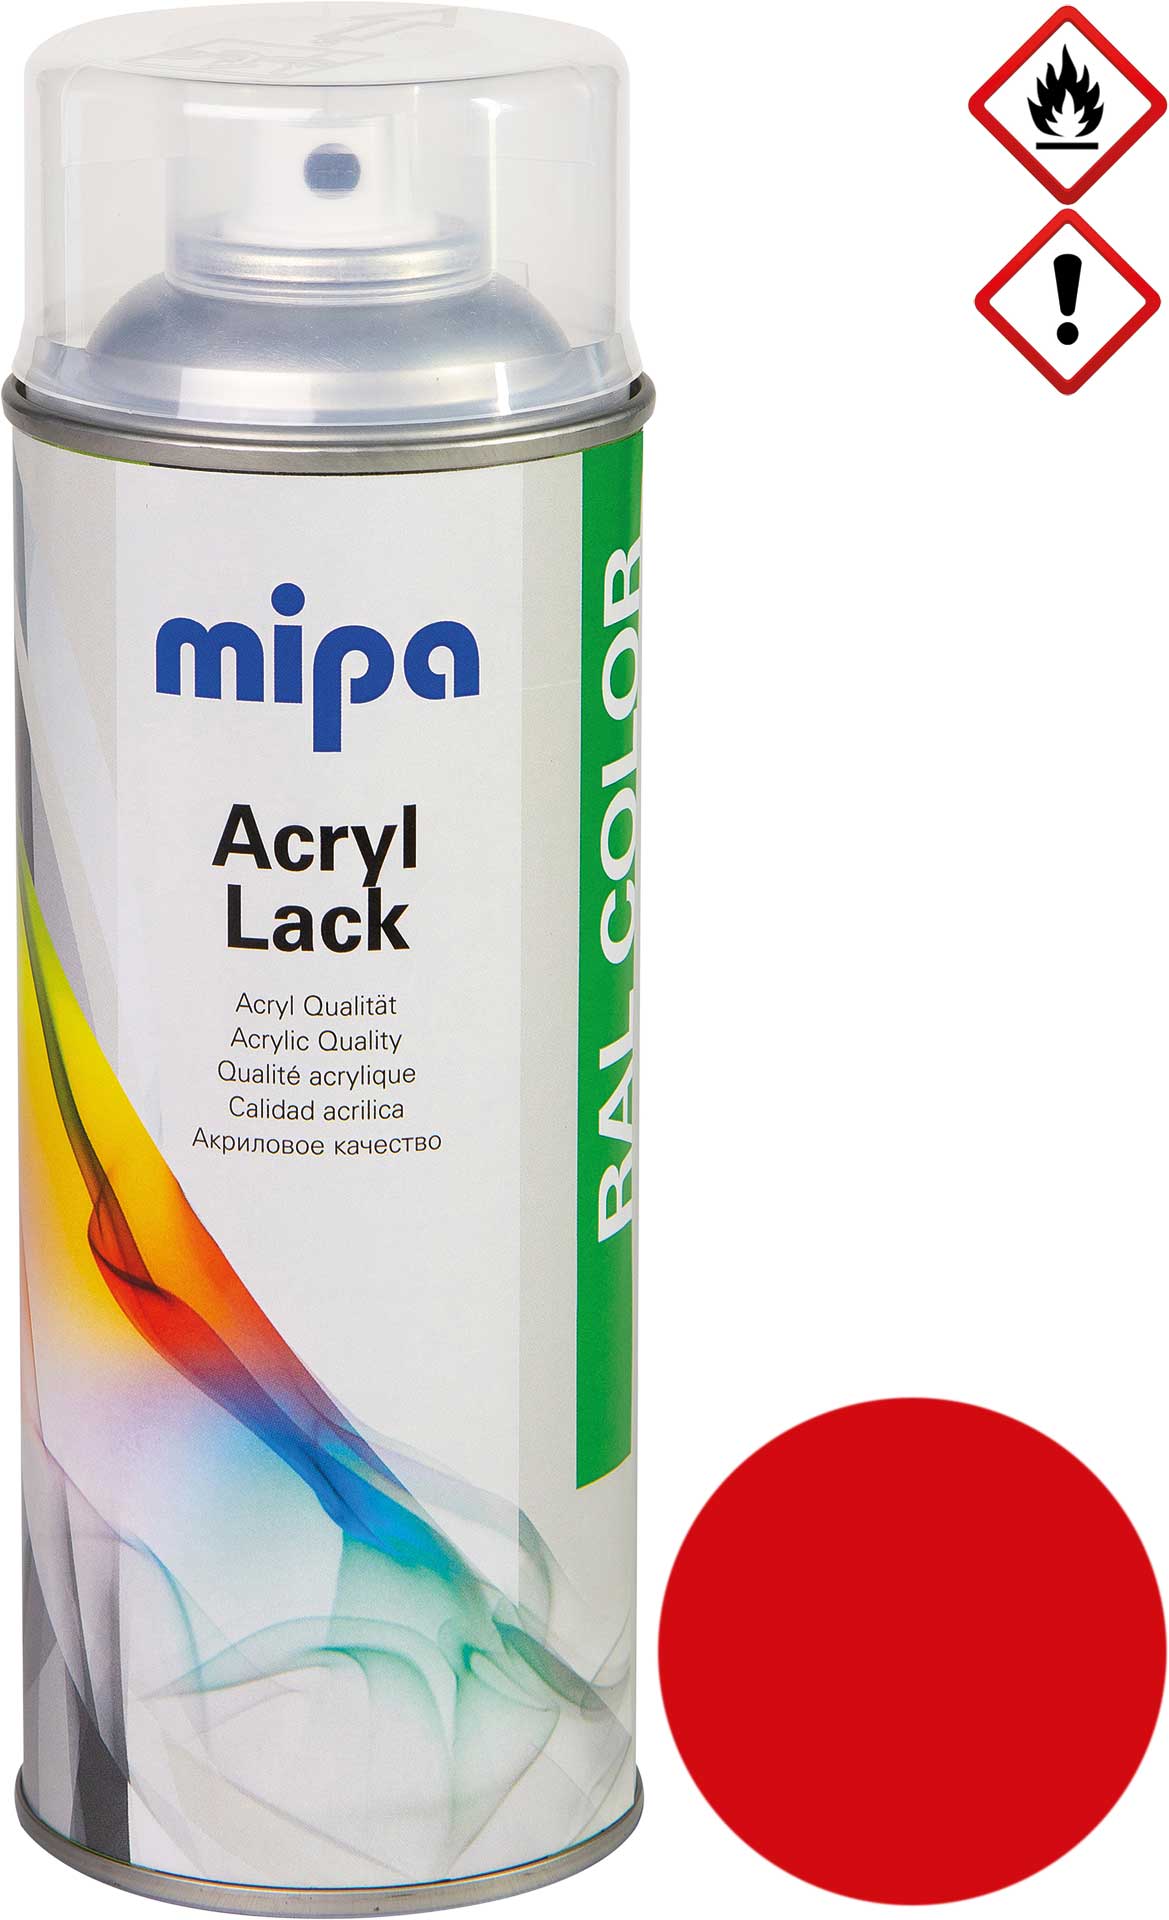 mipa RAL 3020 Rouge trafic 1K acrylique 1K-Acrylique Laque Spray 400 ml